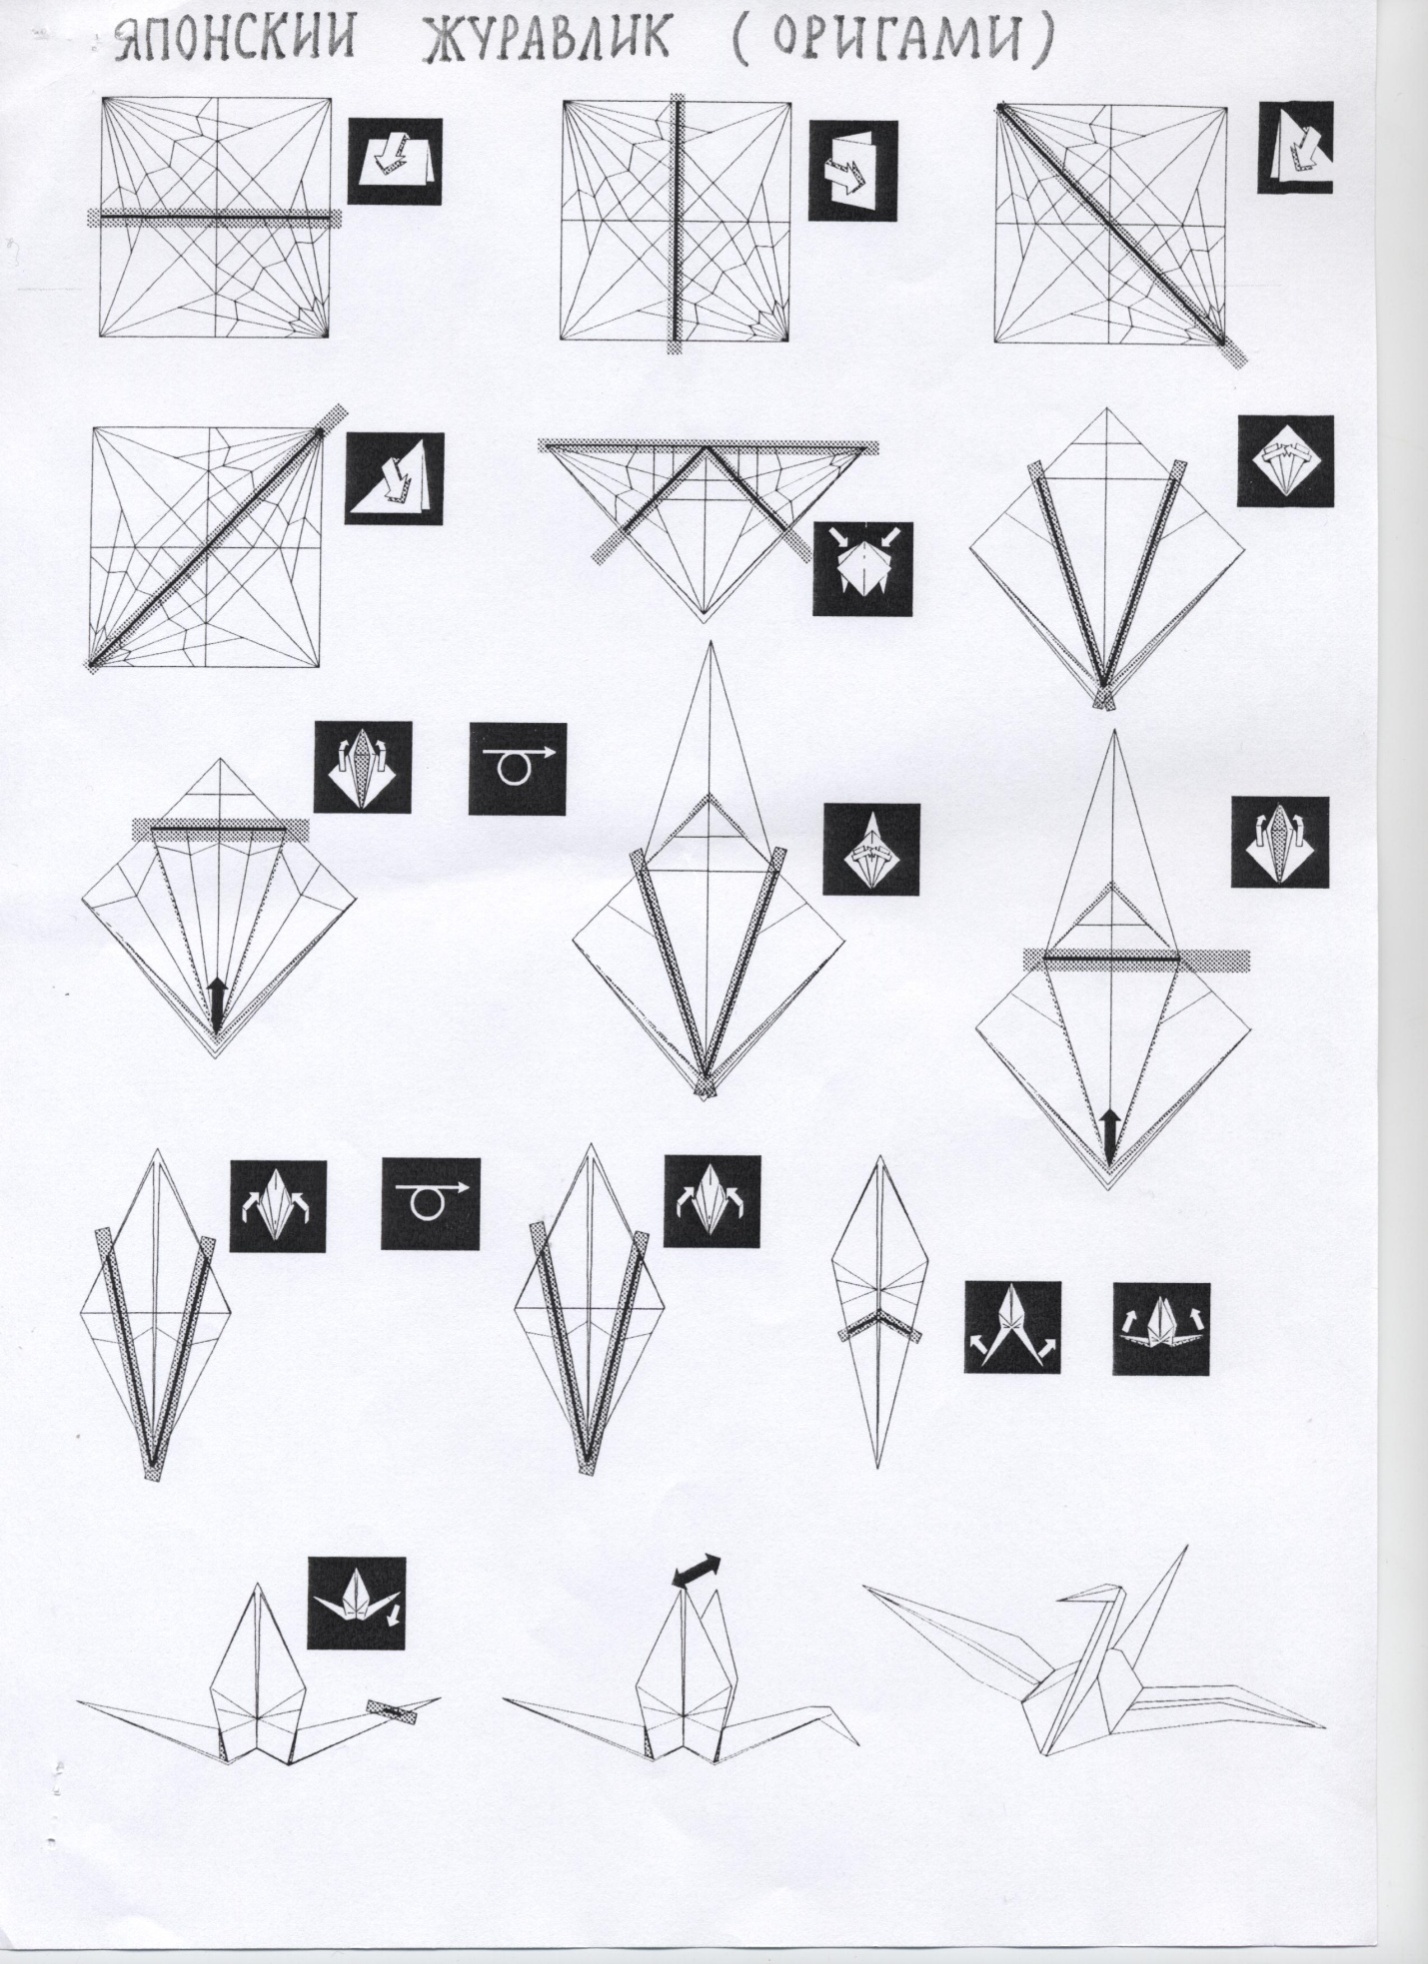 Конспект открытого урока по математике во 2б классе Тема урока: Квадрат. Проект: Оригами. Работа с бумагой.